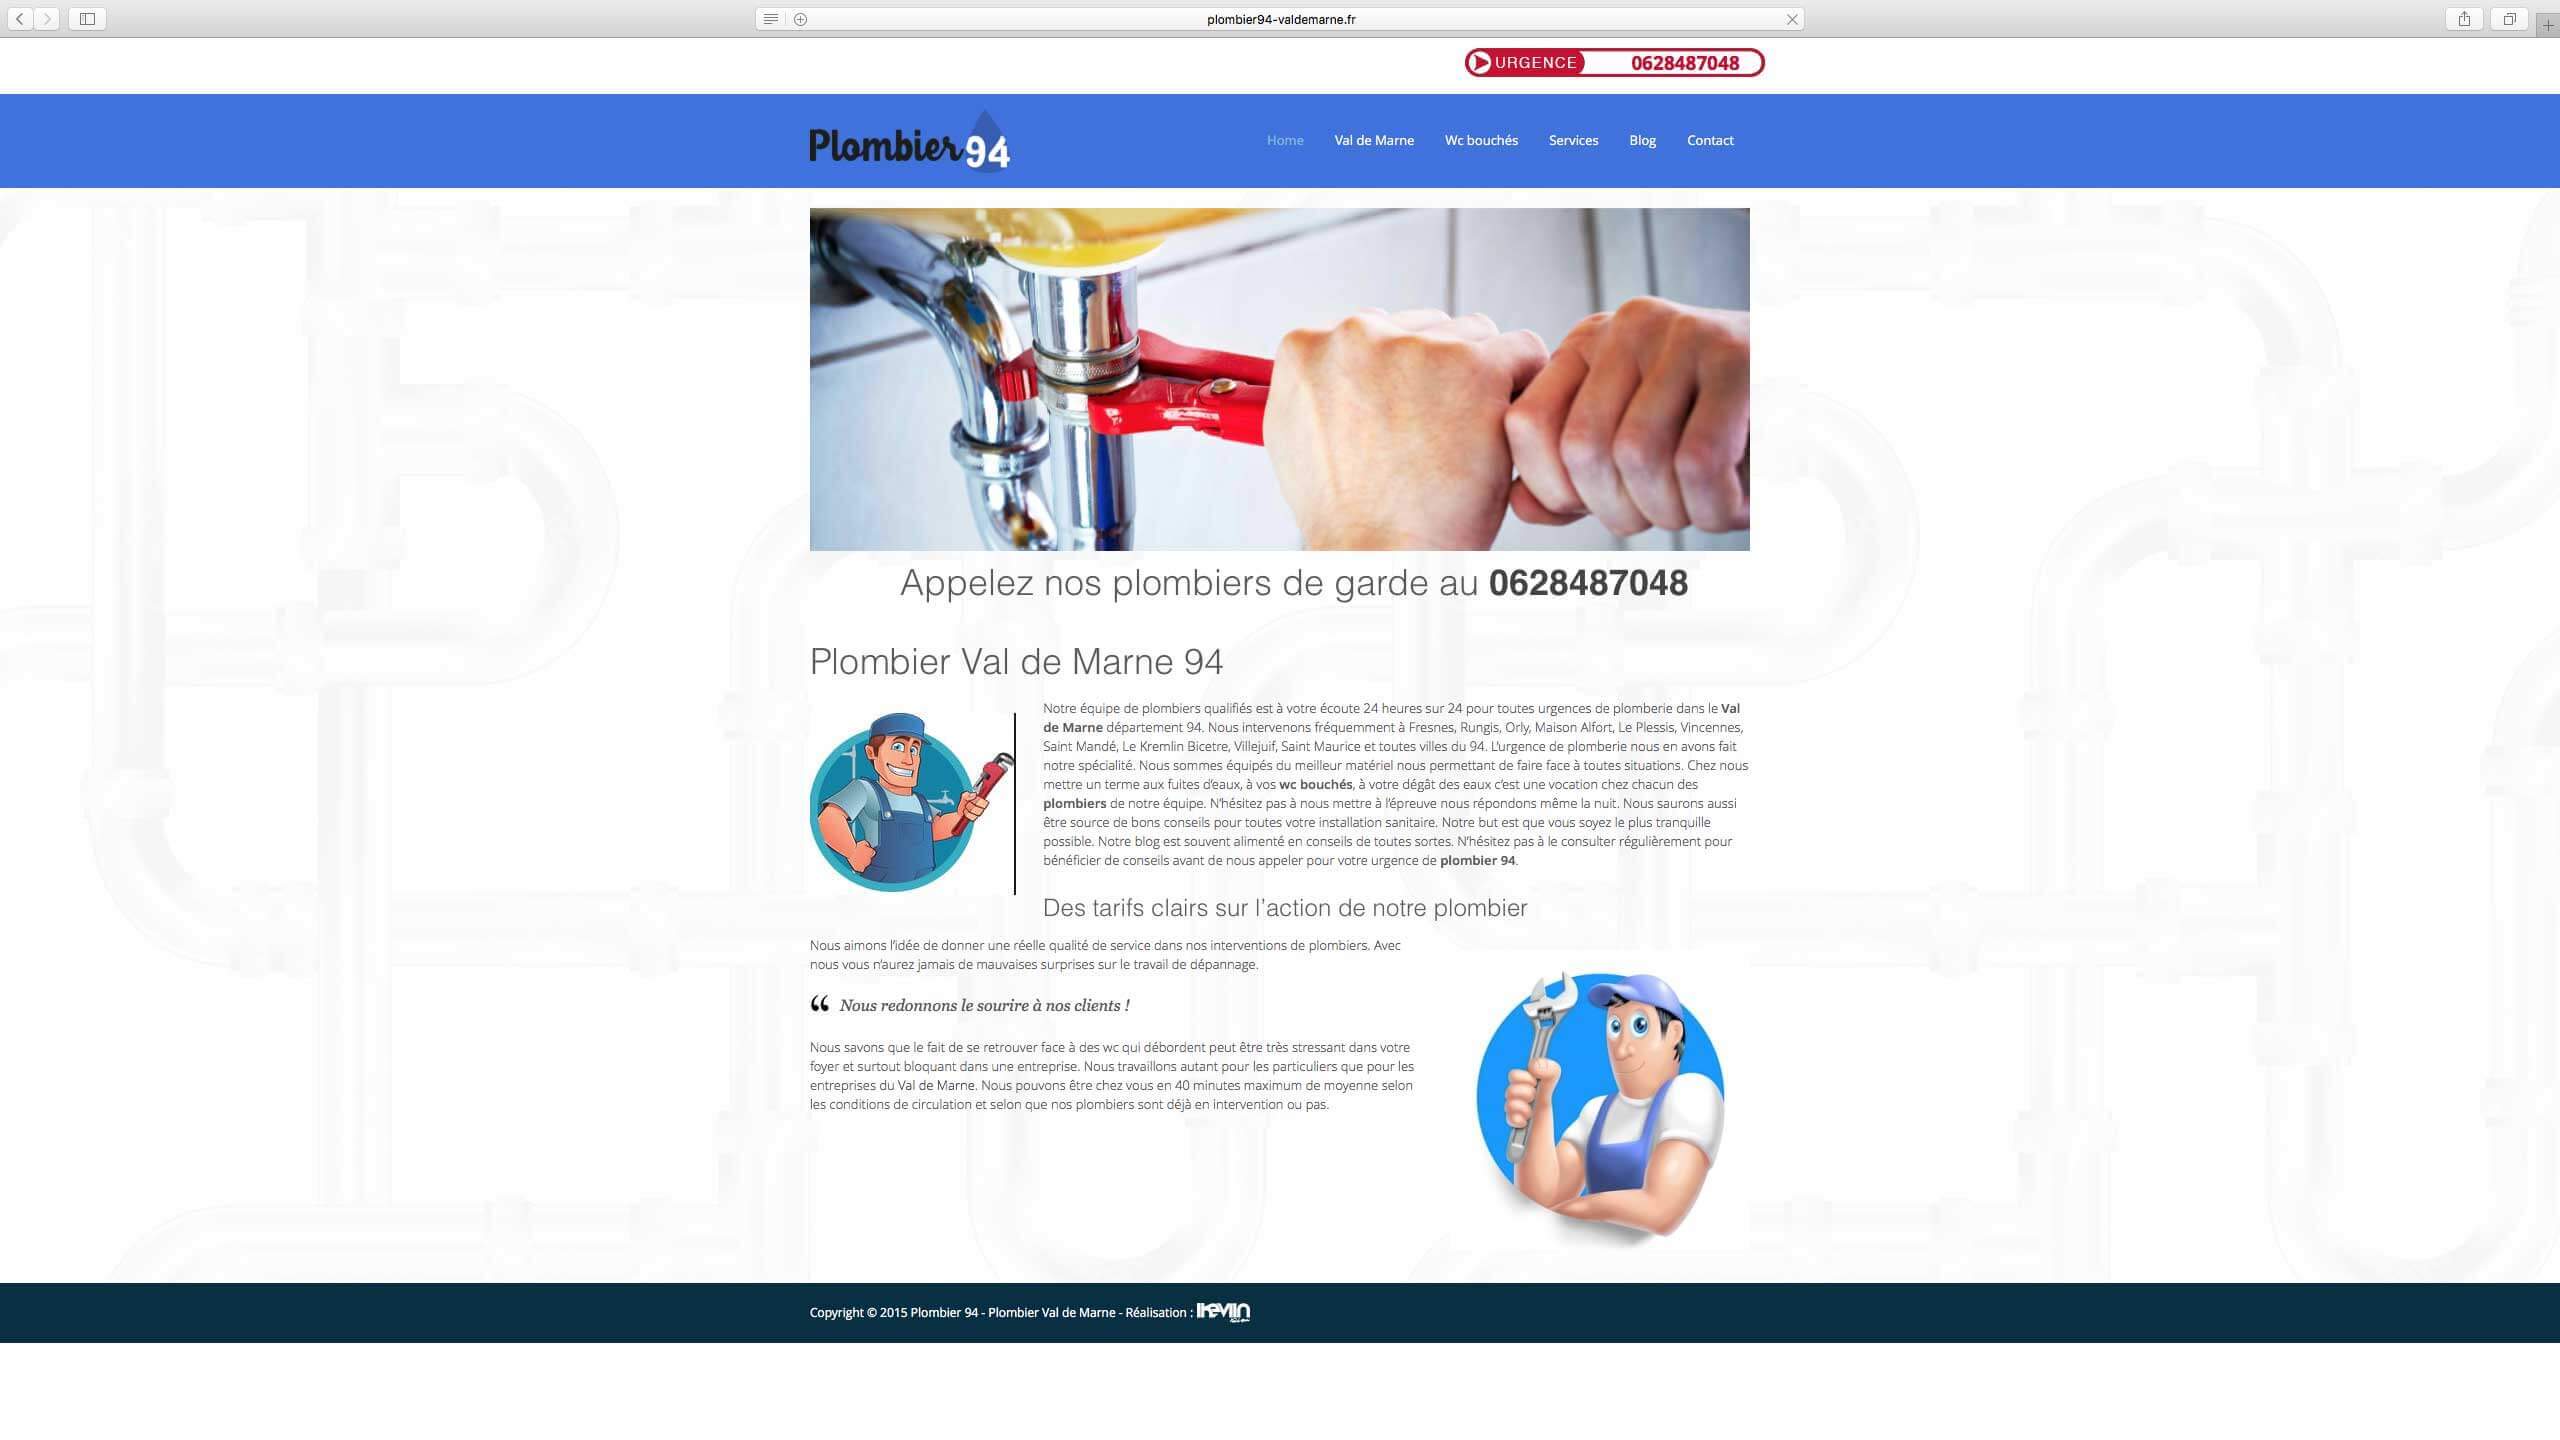 Capture d'écran du site internet Plombier94 réalisé par Kevin de Sousa